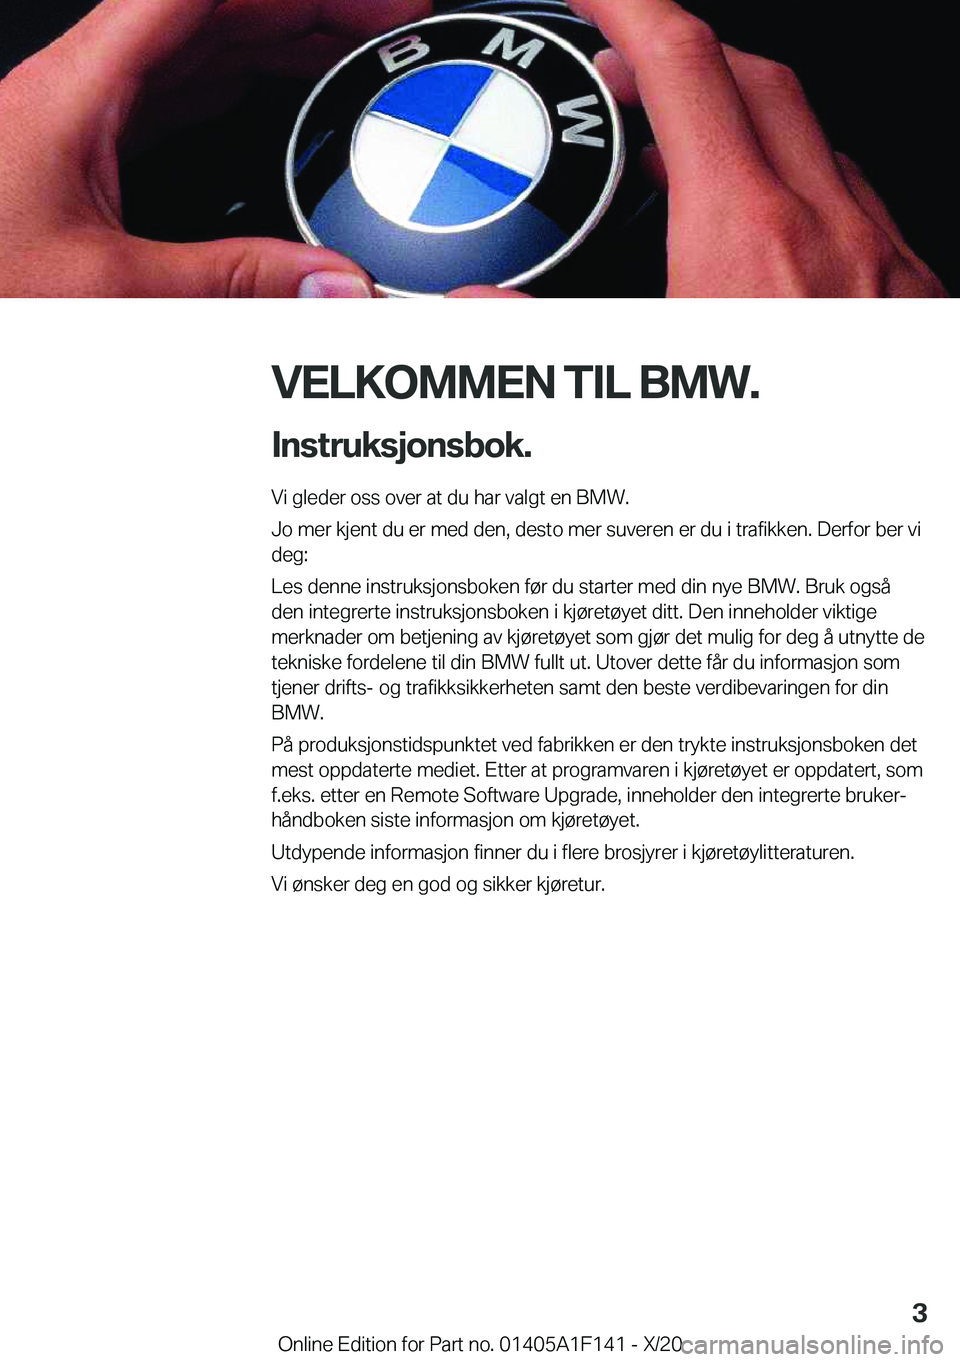 BMW X6 2021  InstruksjonsbØker (in Norwegian) �V�E�L�K�O�M�M�E�N��T�I�L��B�M�W�.�I�n�s�t�r�u�k�s�j�o�n�s�b�o�k�.
�V�i��g�l�e�d�e�r��o�s�s��o�v�e�r��a�t��d�u��h�a�r��v�a�l�g�t��e�n��B�M�W�.
�J�o��m�e�r��k�j�e�n�t��d�u��e�r��m�e�d�